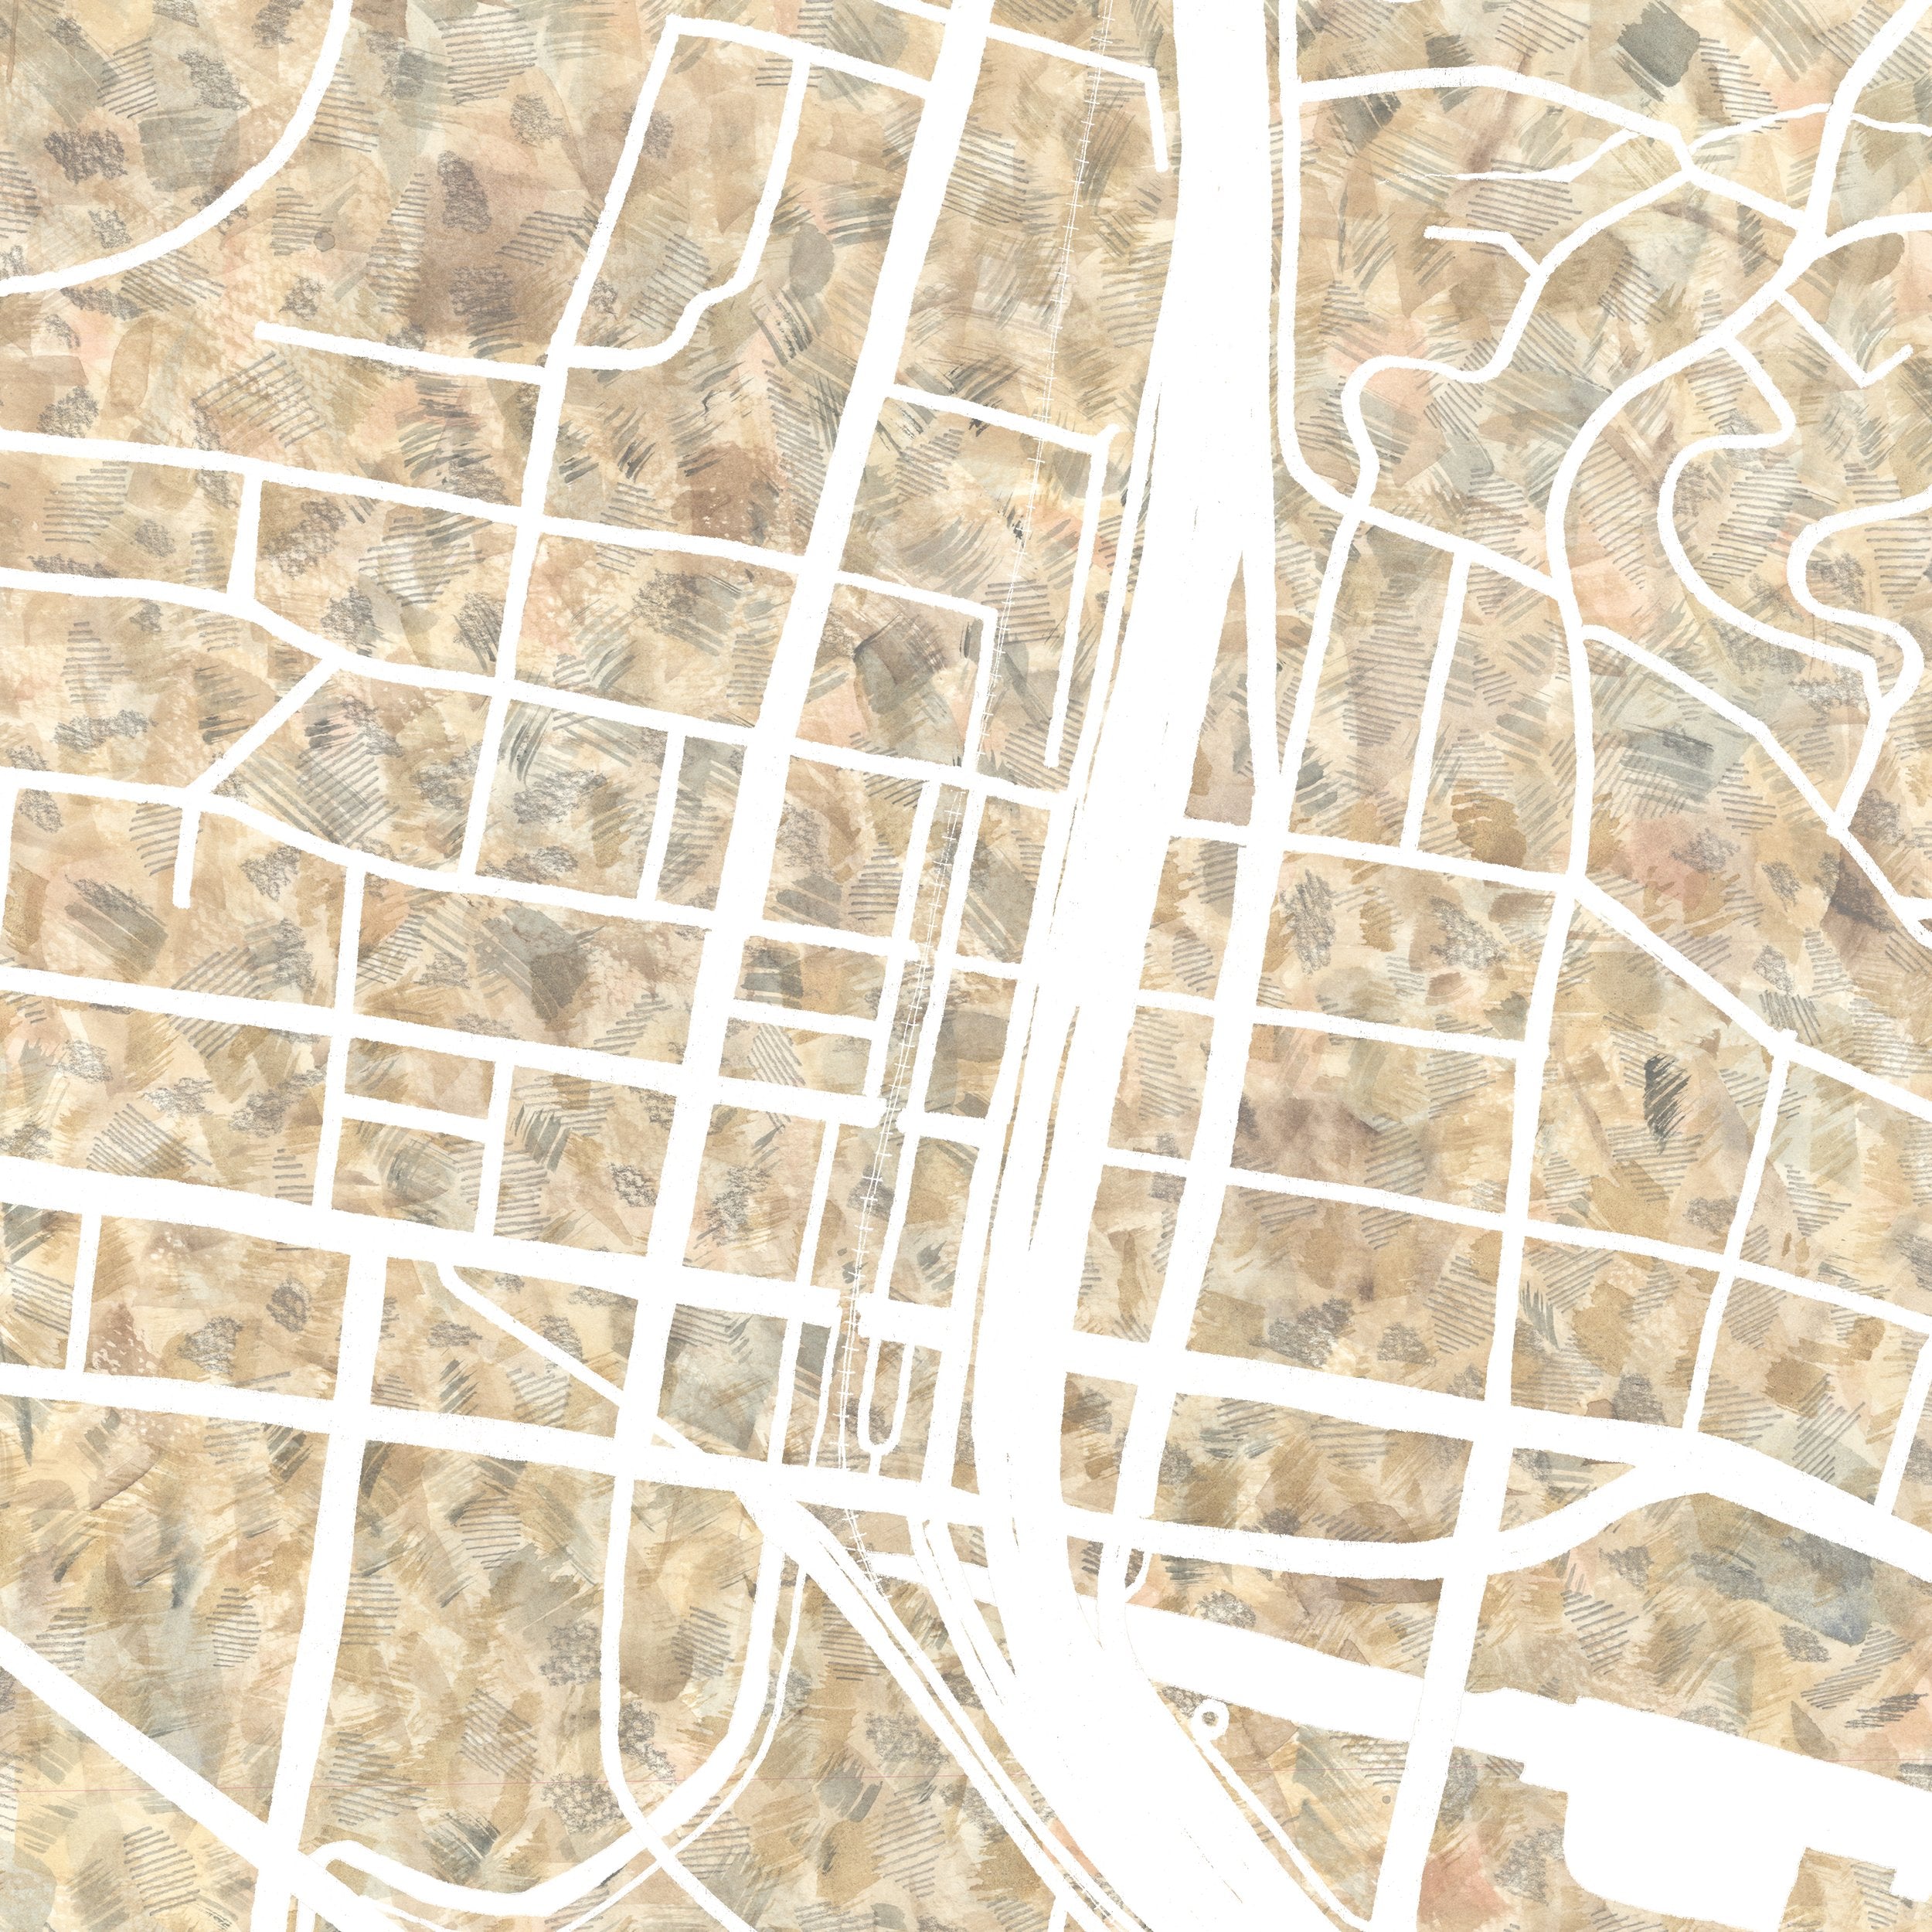 SAN RAFAEL Dominican University California Urban Fabrics City Map: PRINT